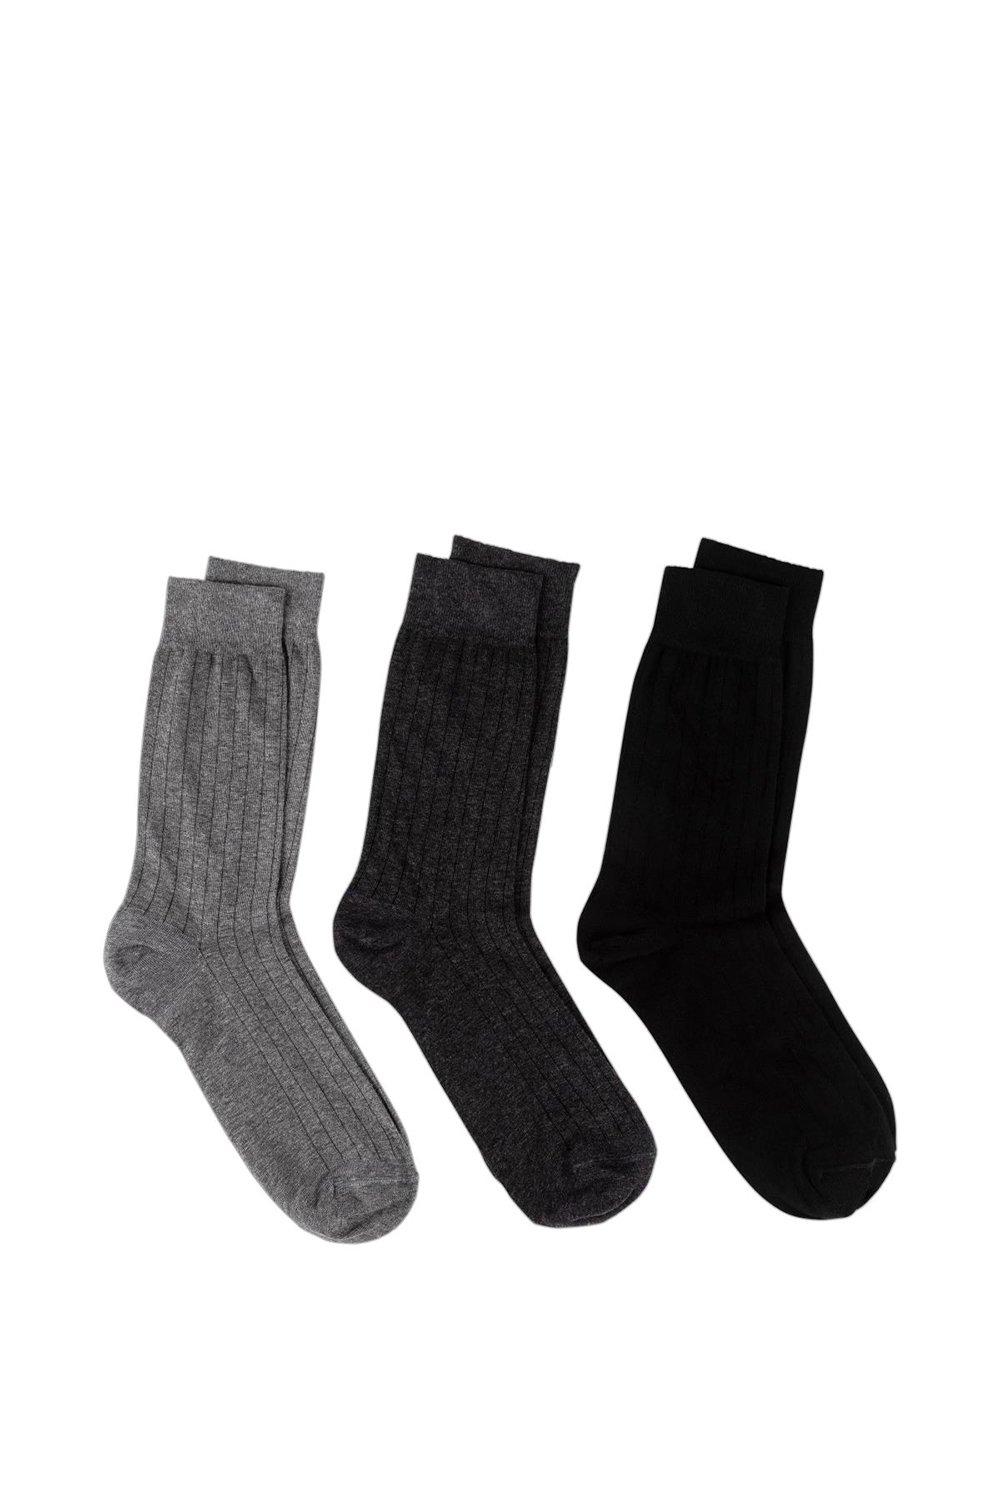 Italian Cotton Rich Ankle Socks  (Triple Pack)